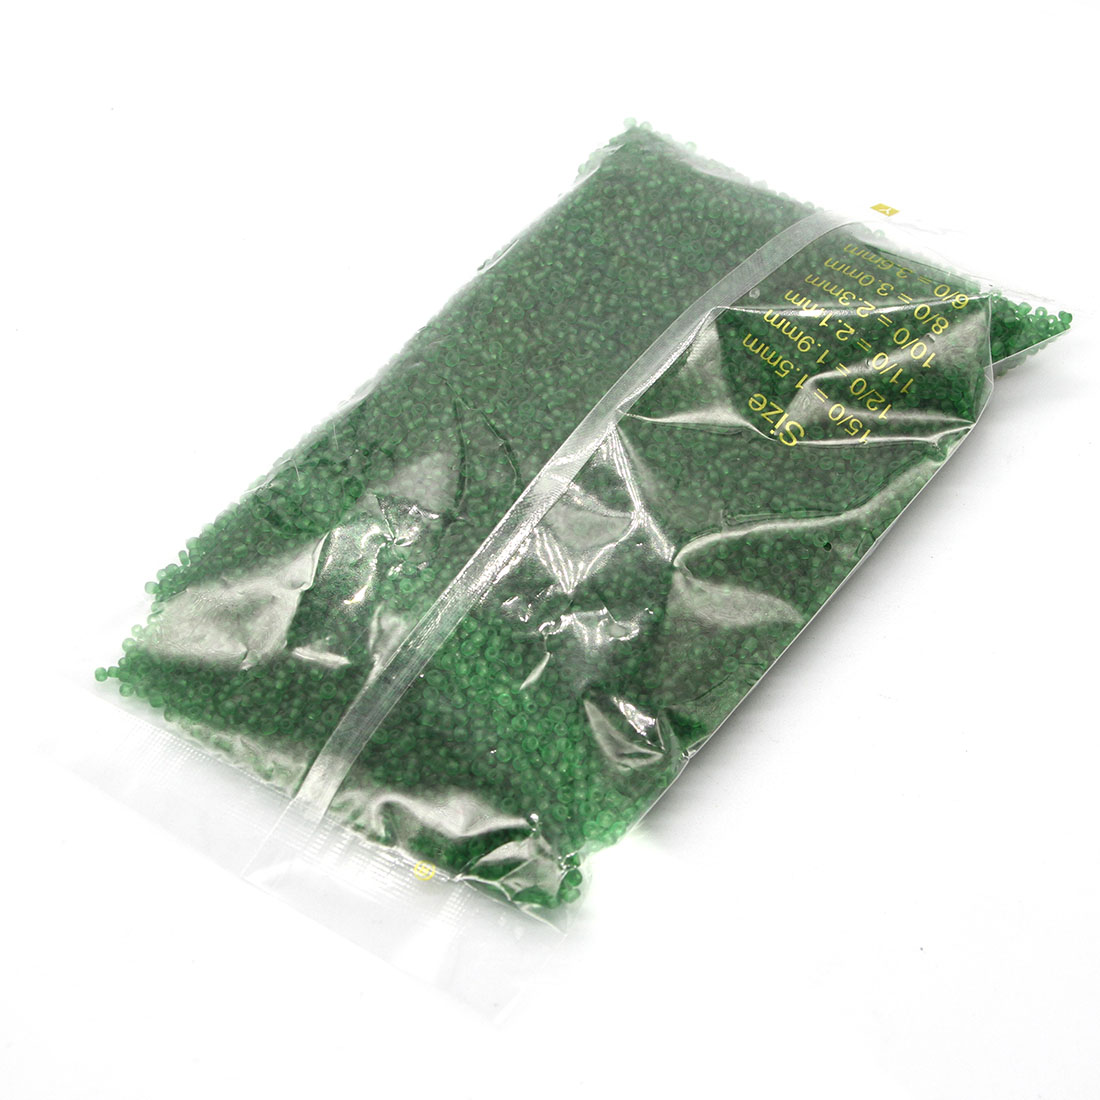 Grass green 2mm 30000 pack